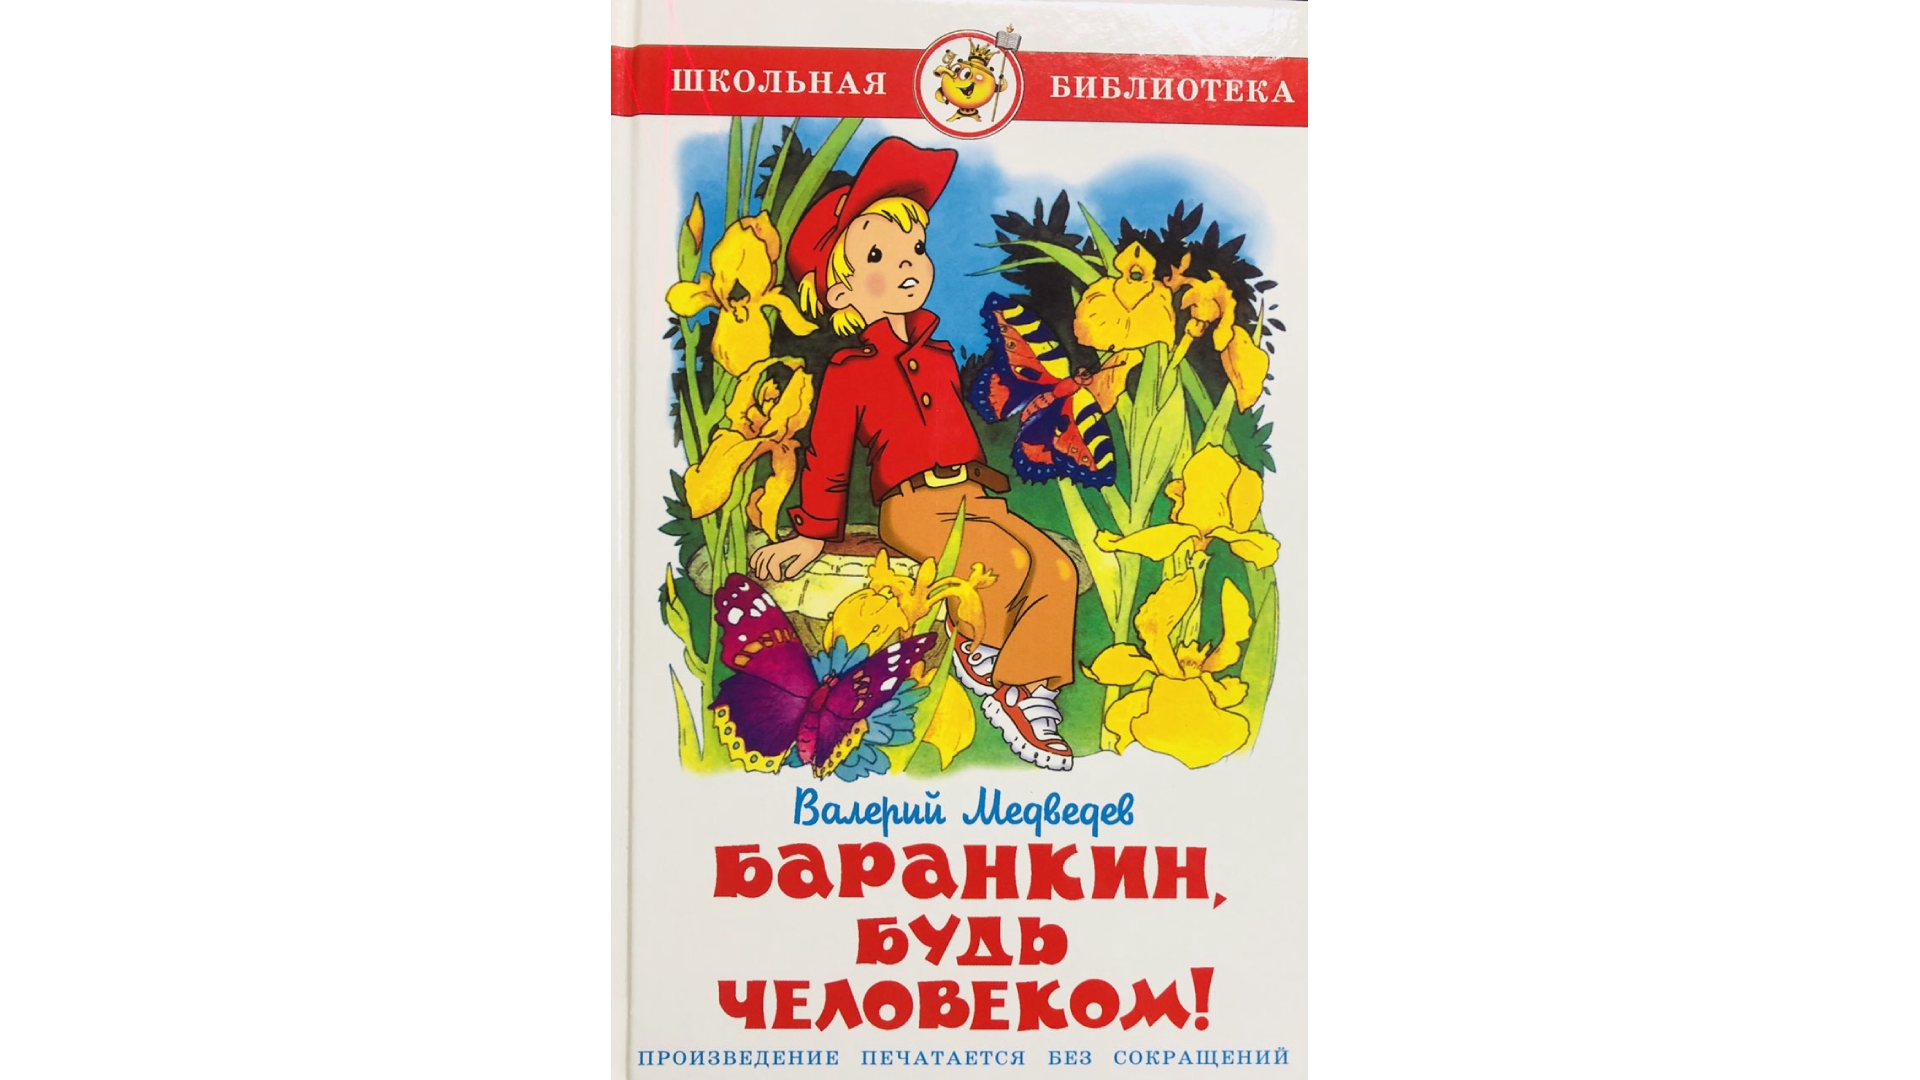 Медведев будь человеком читать. ШБ самовар "Баранкин будь человеком". Книга Медведева Баранкин будь человеком. Медведев Баранкин будь человеком обложка.